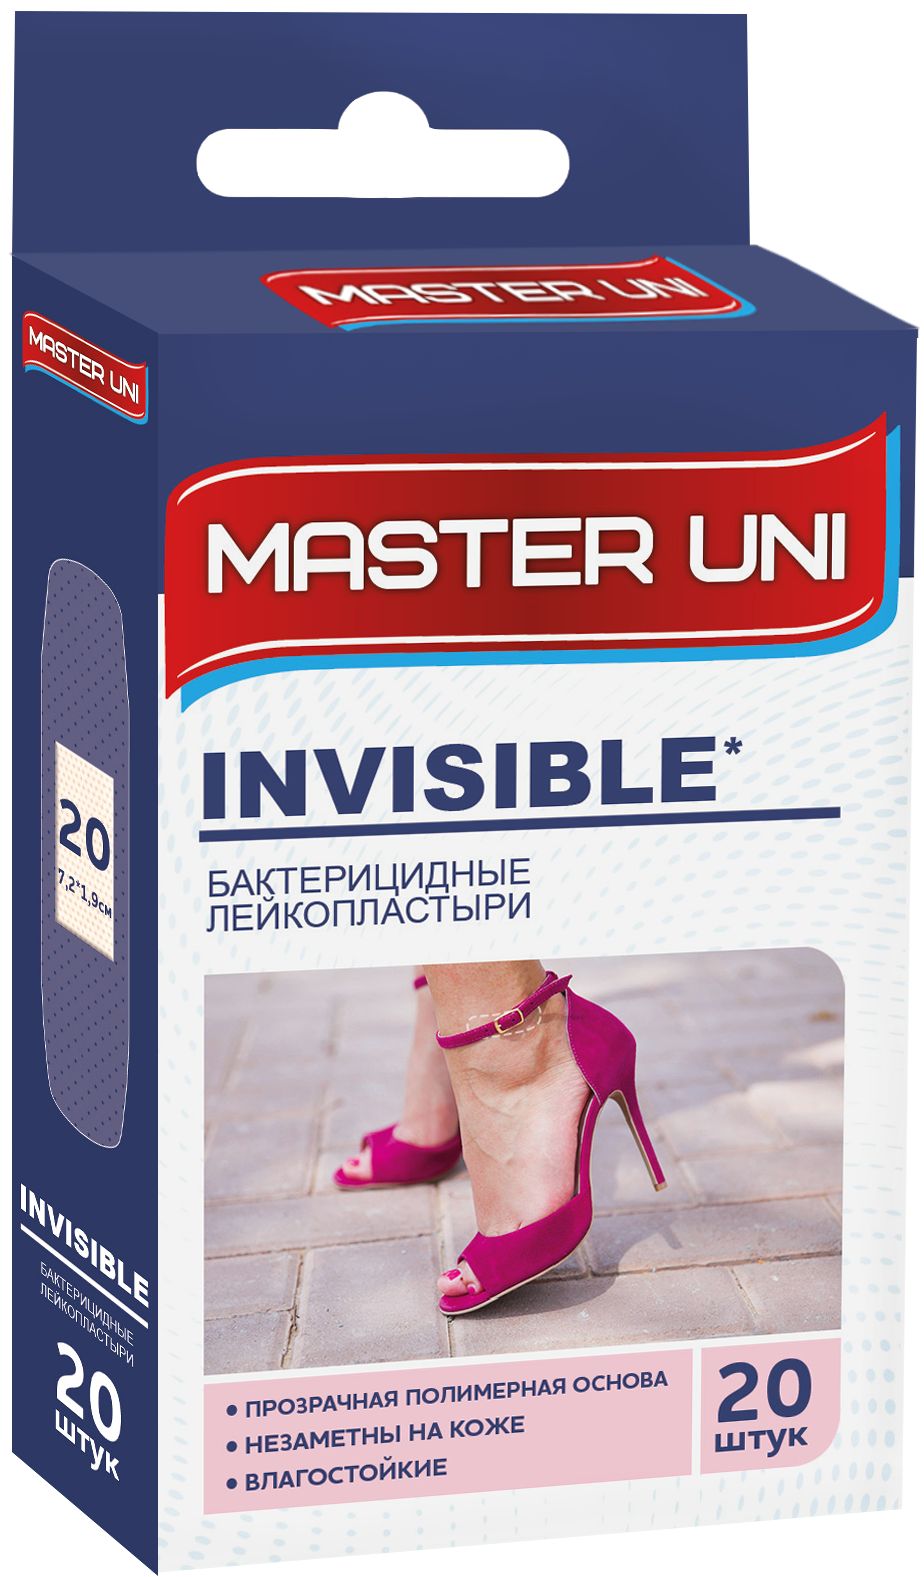 Купить Пластырь Master Uni Invisible бактерицидный на прозрачной полимерной основе 20 шт.